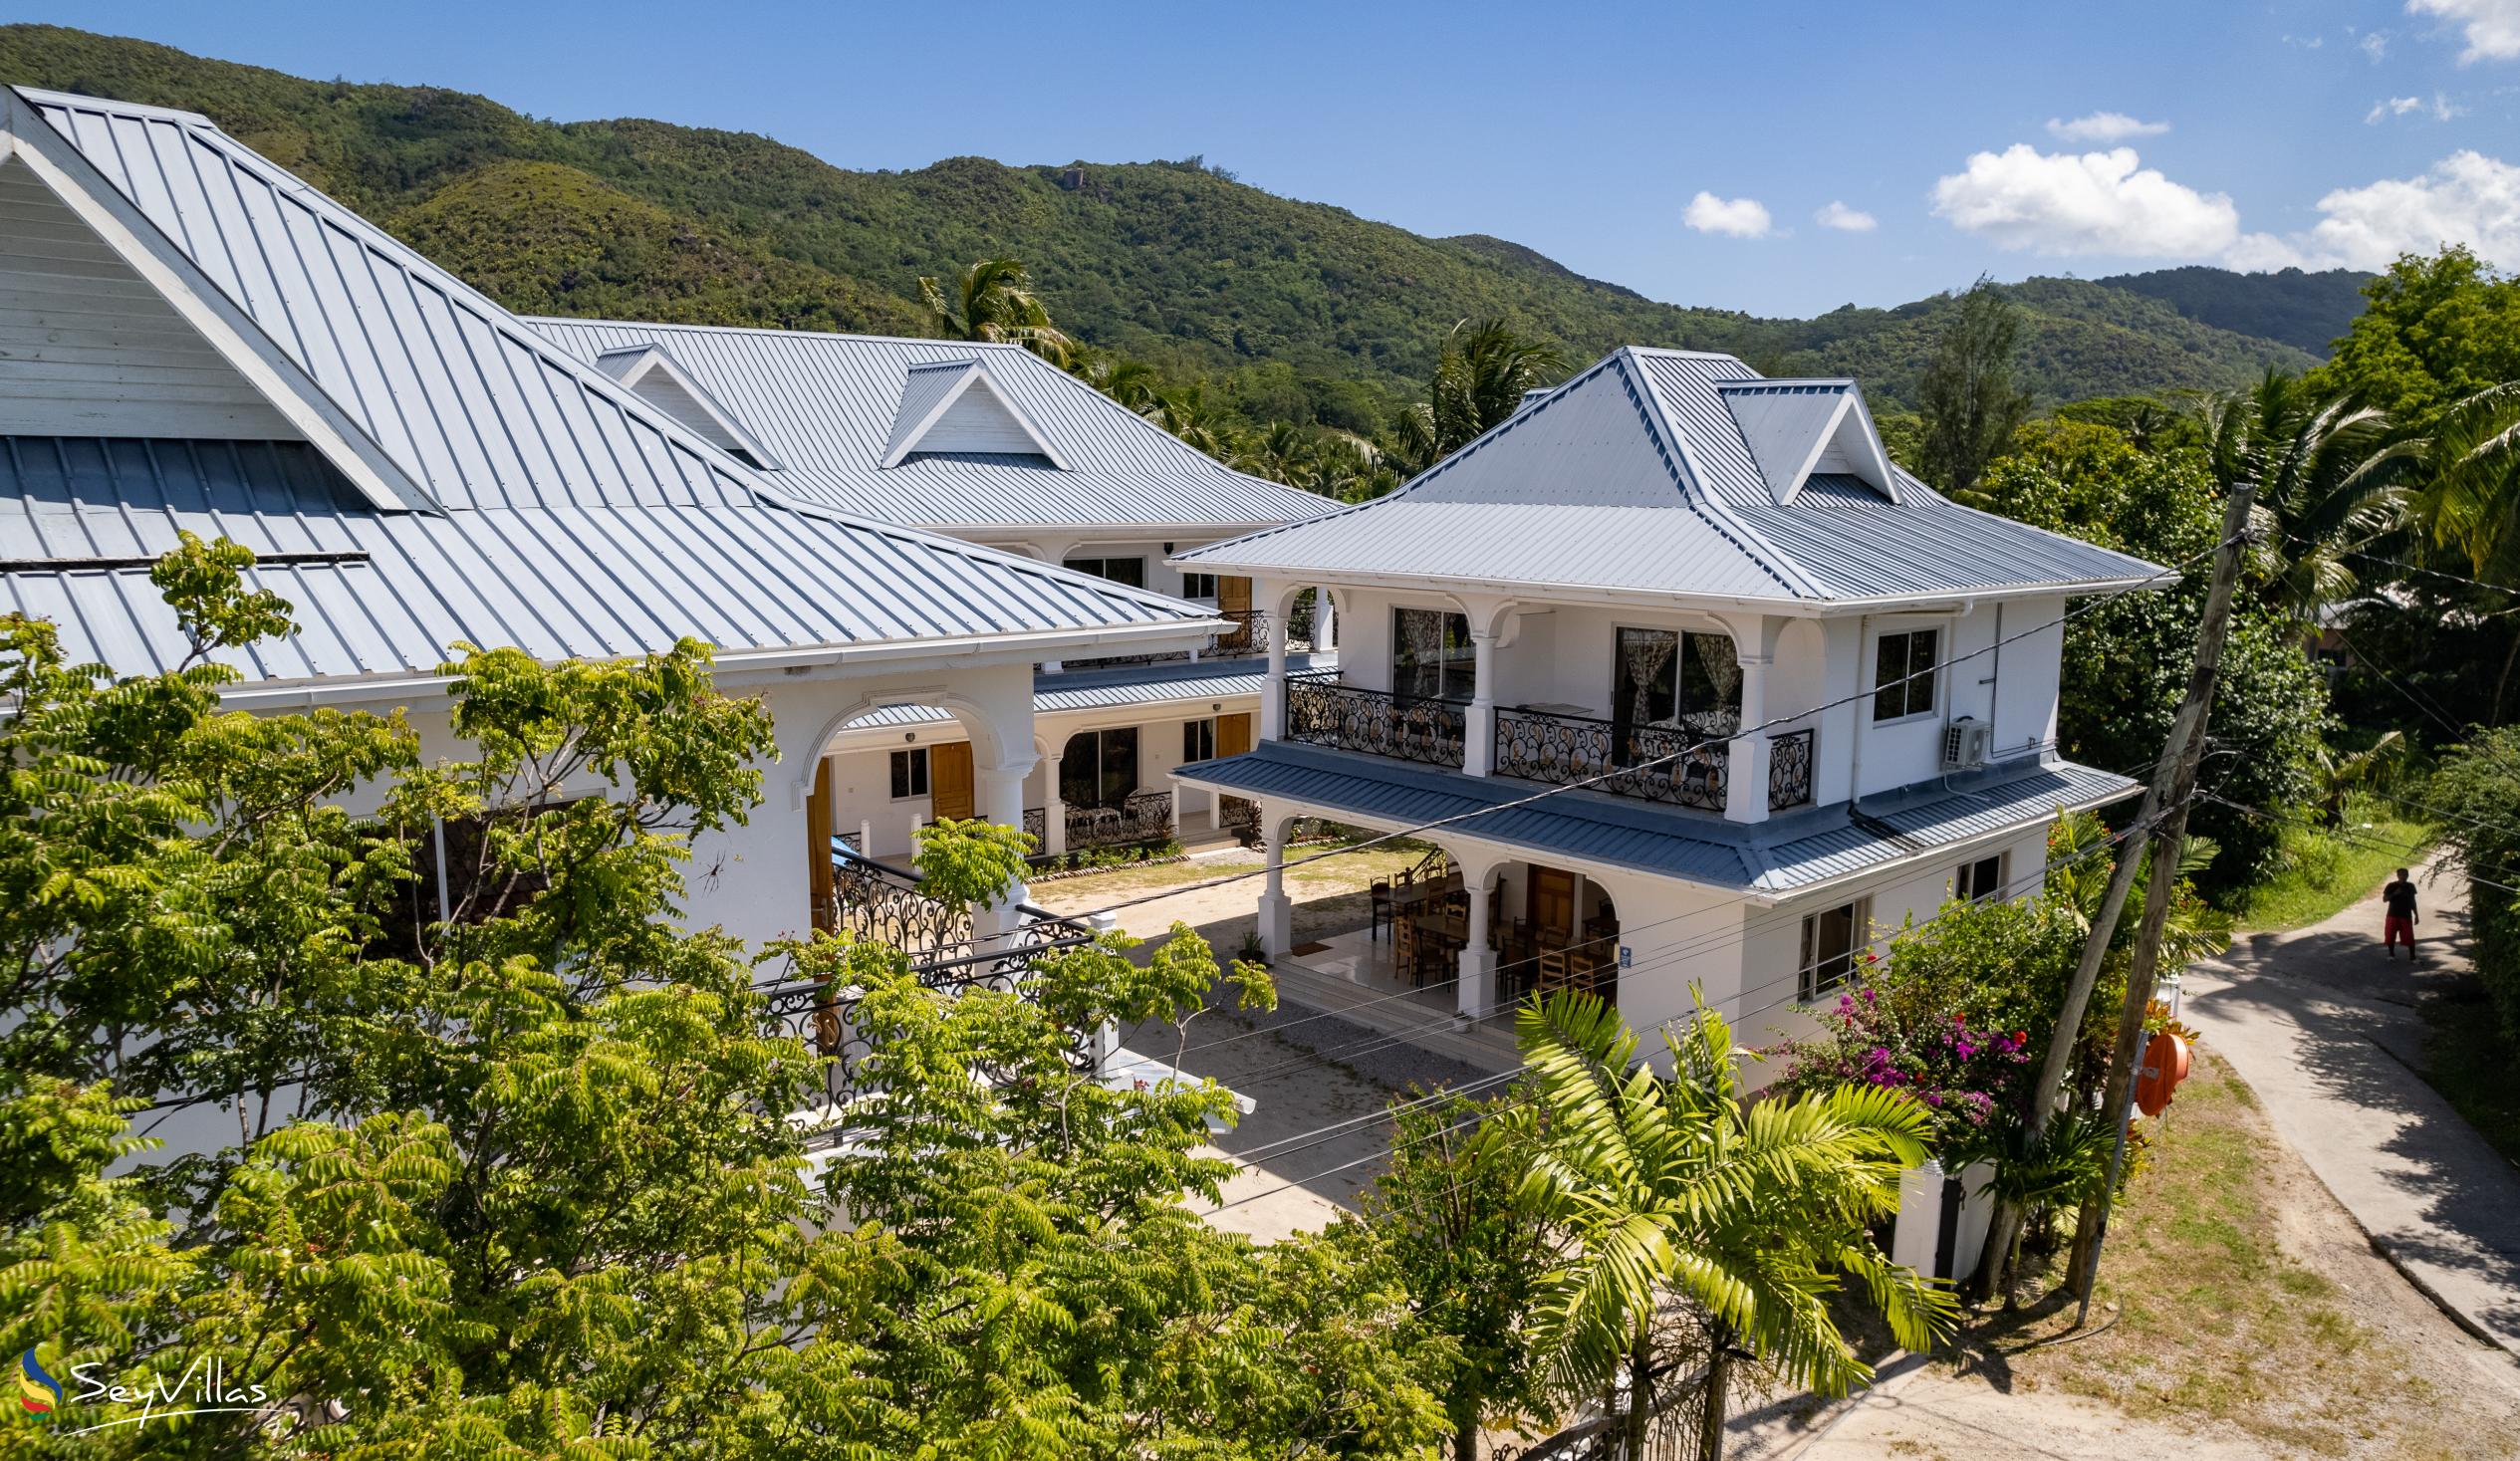 Foto 3: Casadani Luxury Guest House - Aussenbereich - Praslin (Seychellen)